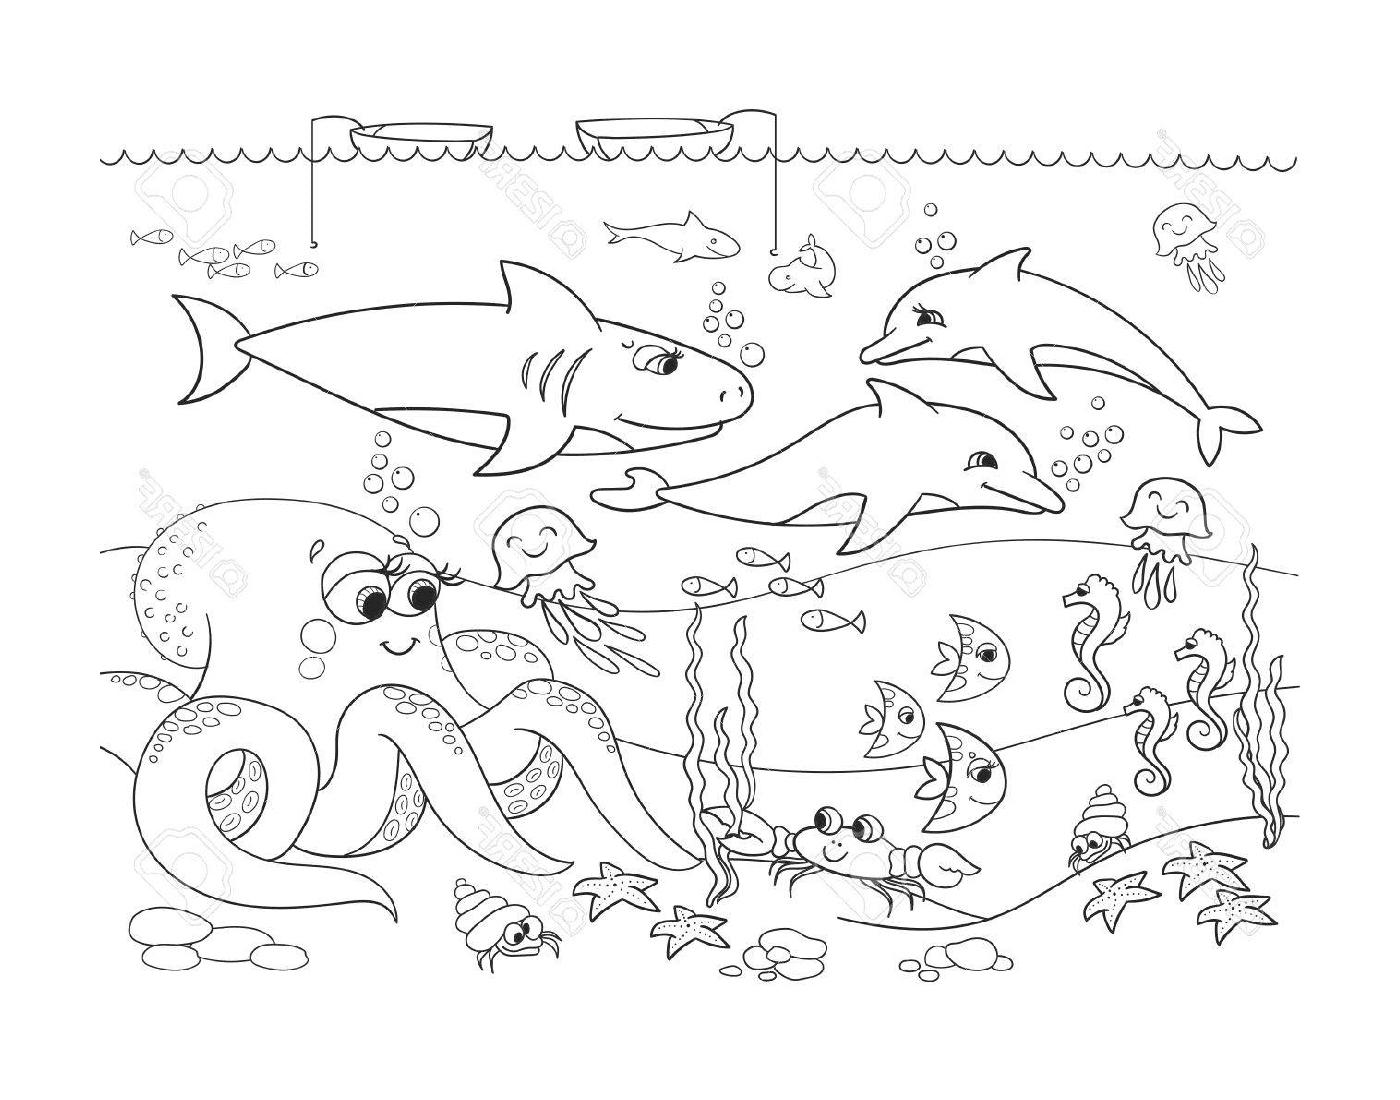  eine Unterwasserszene mit vielen verschiedenen Tieren 